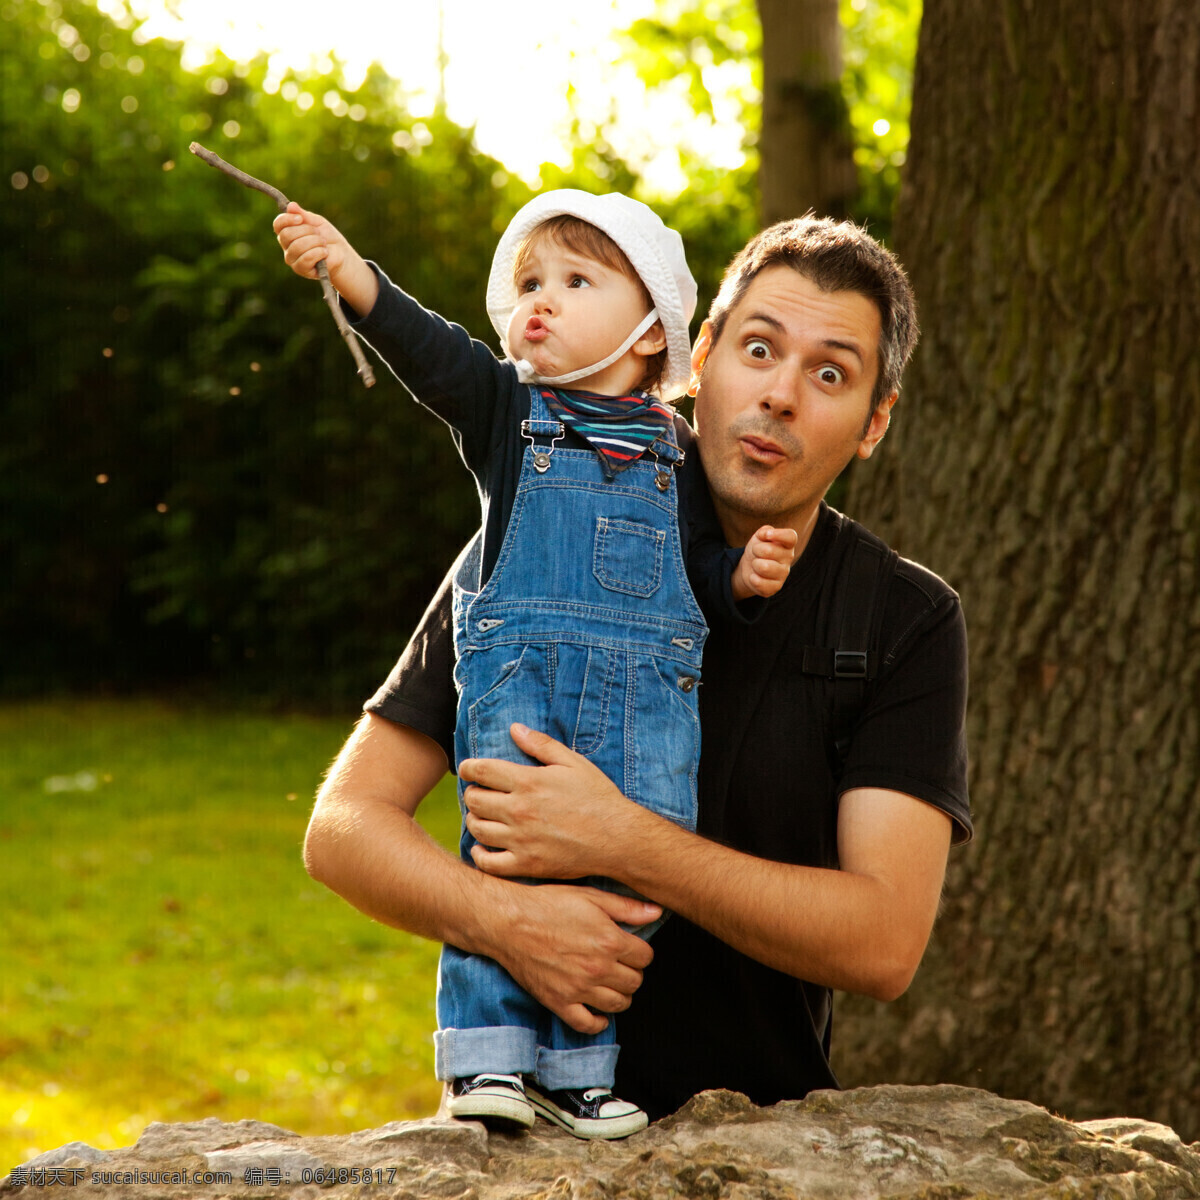 抱 儿子 玩耍 父亲 爸爸 儿童 孩子 父子俩 人物 人物摄影 生活人物 人物图片